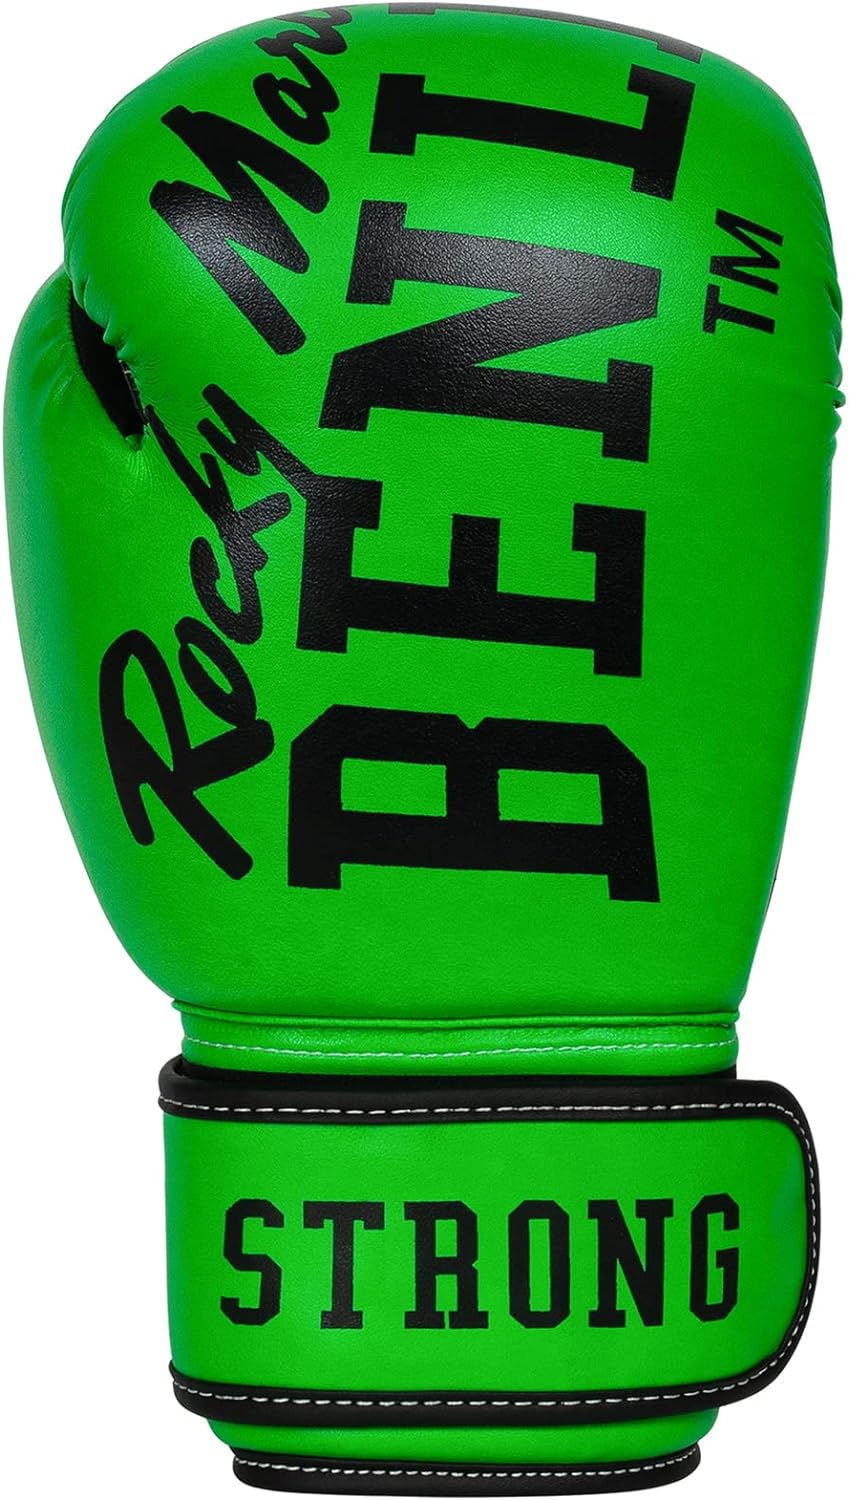  Боксерские перчатки Benlee Chunky В зеленые 